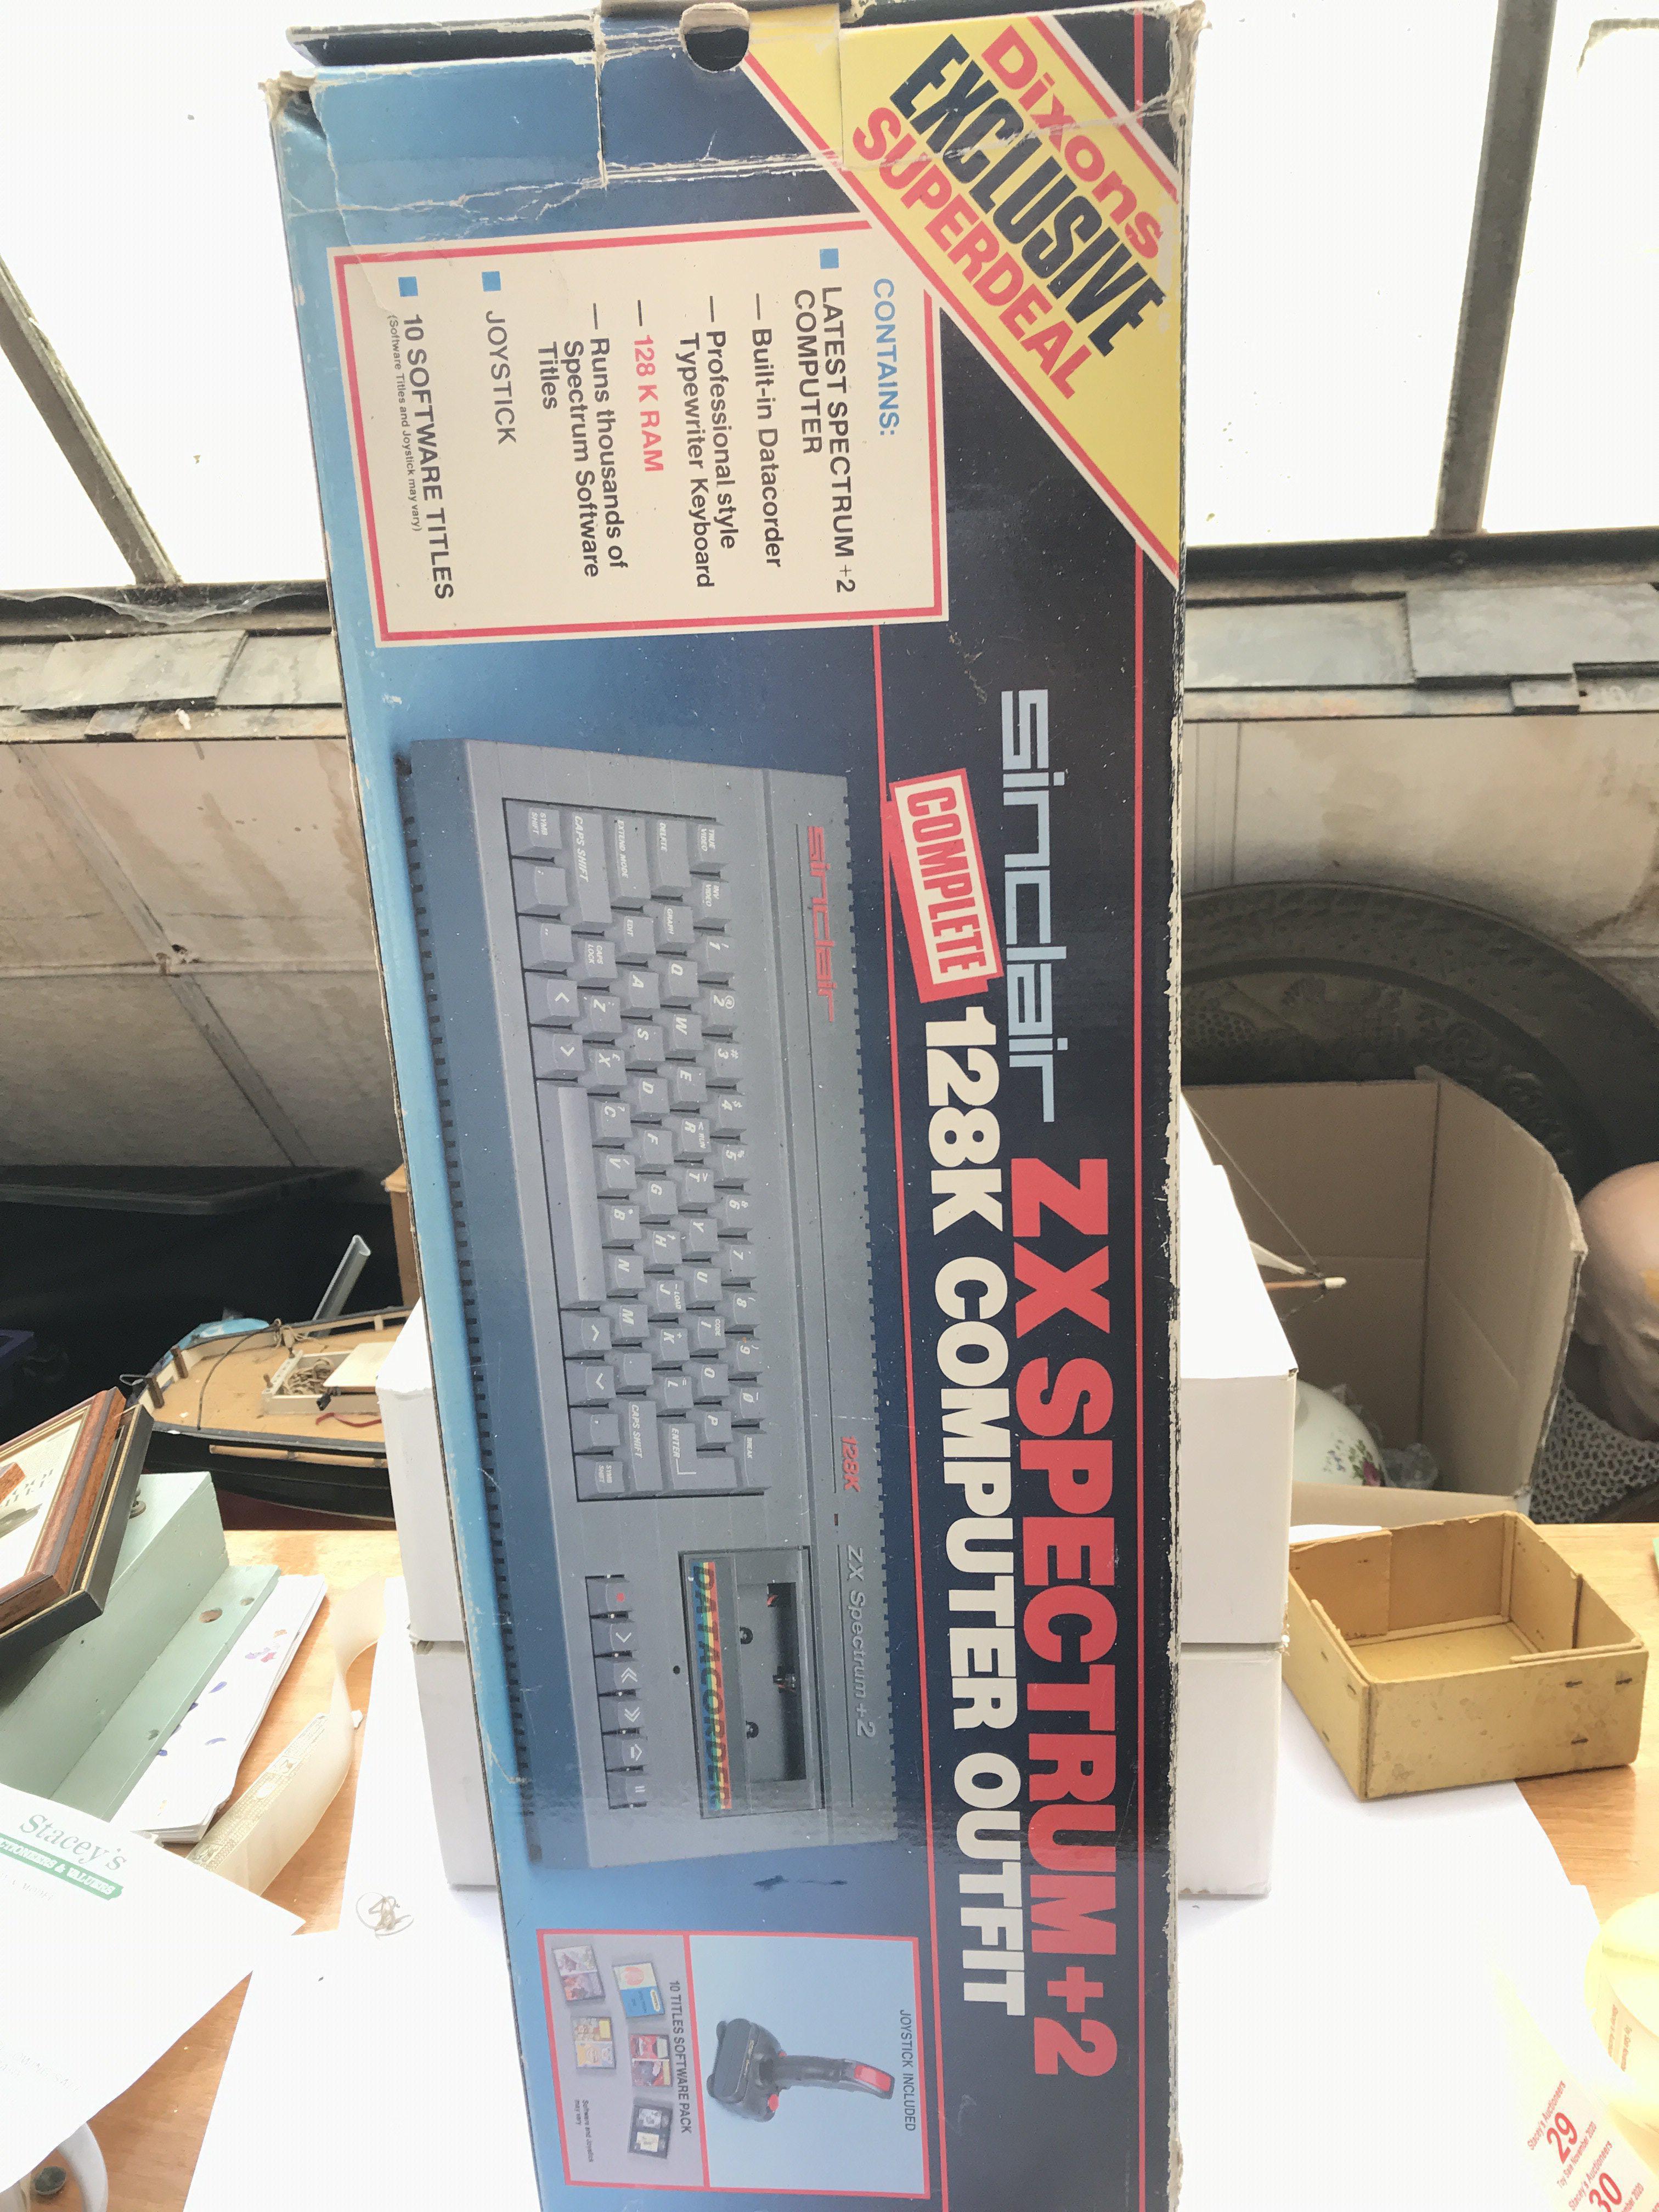 A boxed ZX Spectrum +2 computer, Dixon's version,